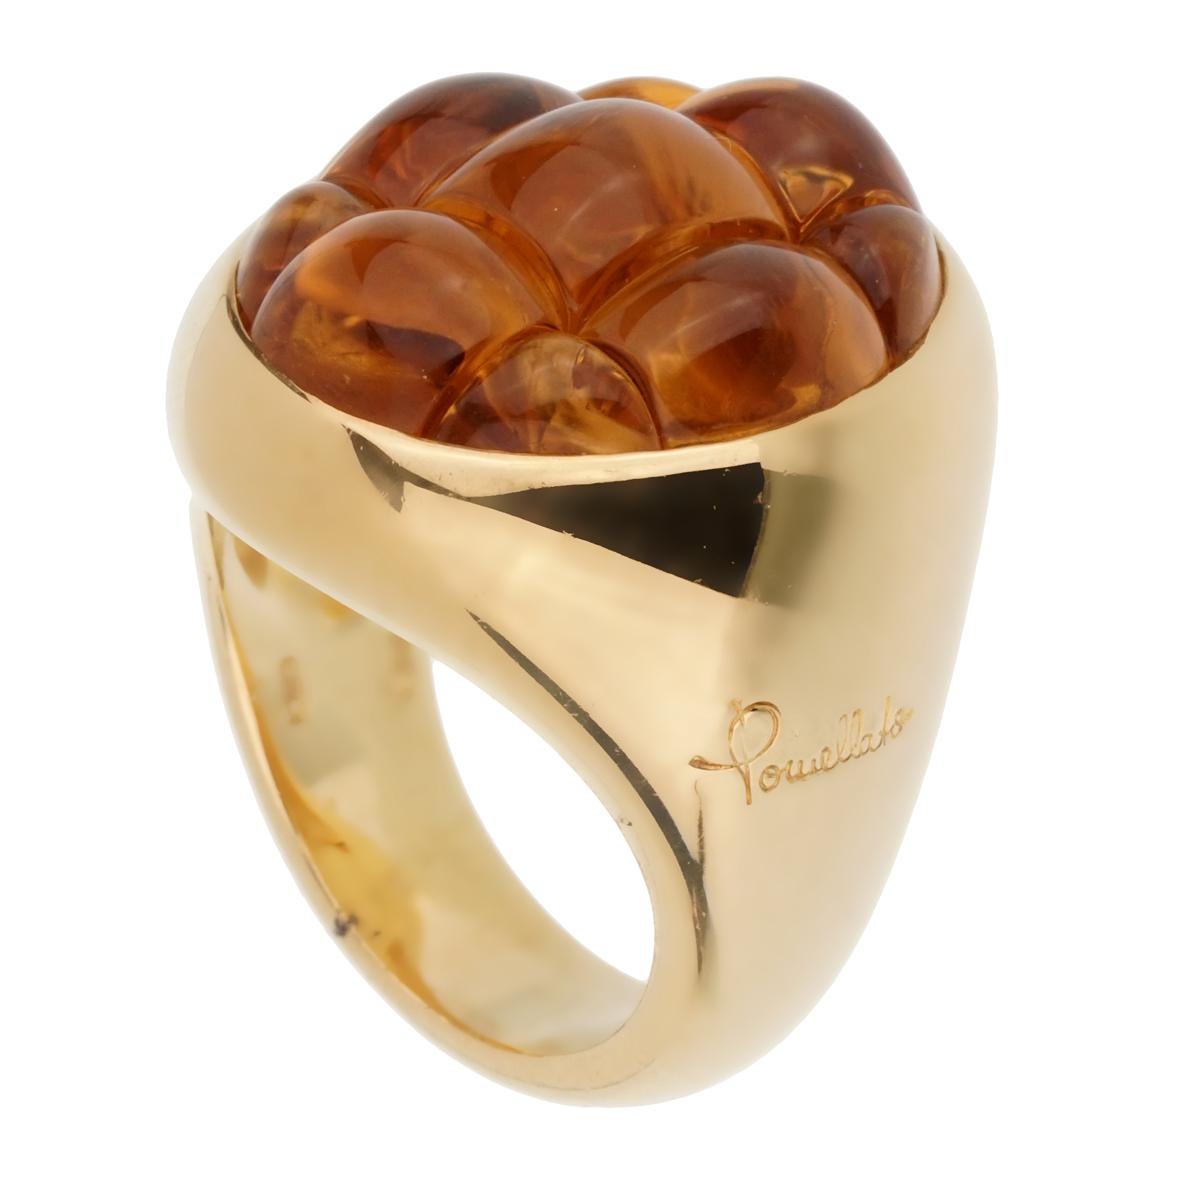 Ein fabelhafter, brandneuer Pomellato-Ring mit einem 16-karätigen Citrin, der in schimmerndes 18-karätiges Gelbgold gefasst ist. Der Ring hat die Größe 7,25 und kann in der Größe geändert werden.

Verkaufspreis: $9000
Sku: 2329